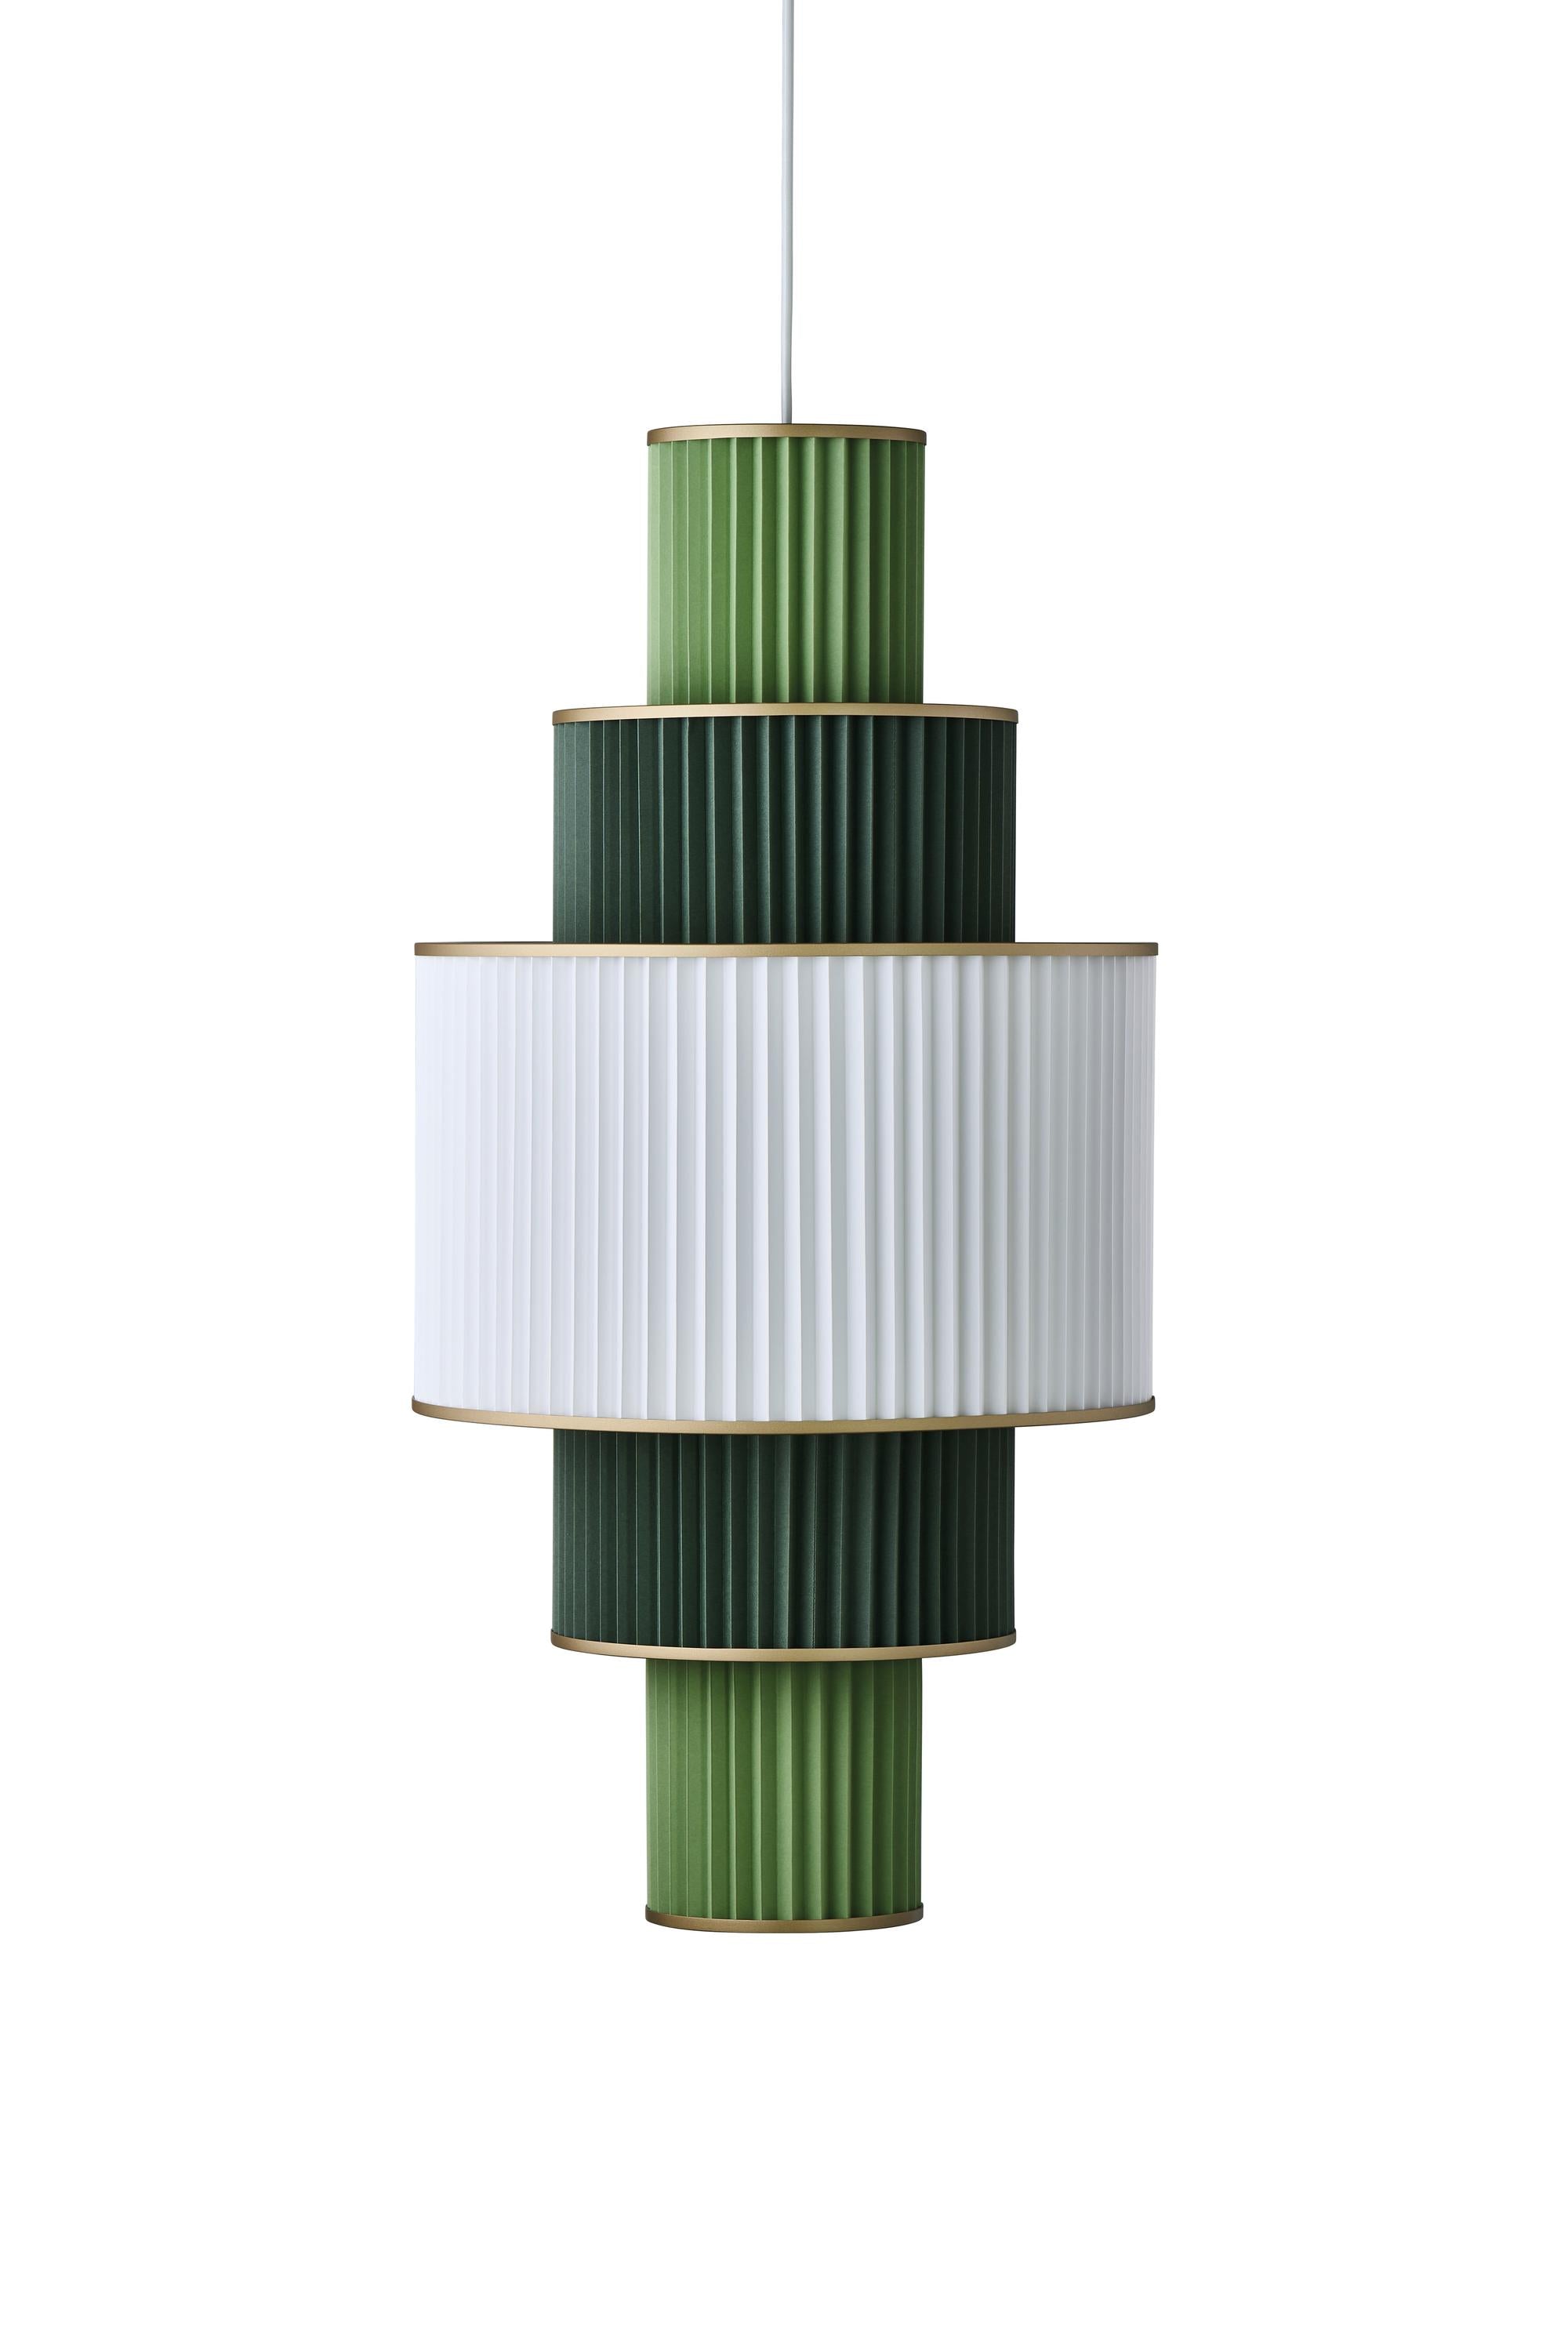 Le Klint Plivello Suspensionslampe Golden/Weiß/hellgrün mit 5 Schattierungen (S m l m s)